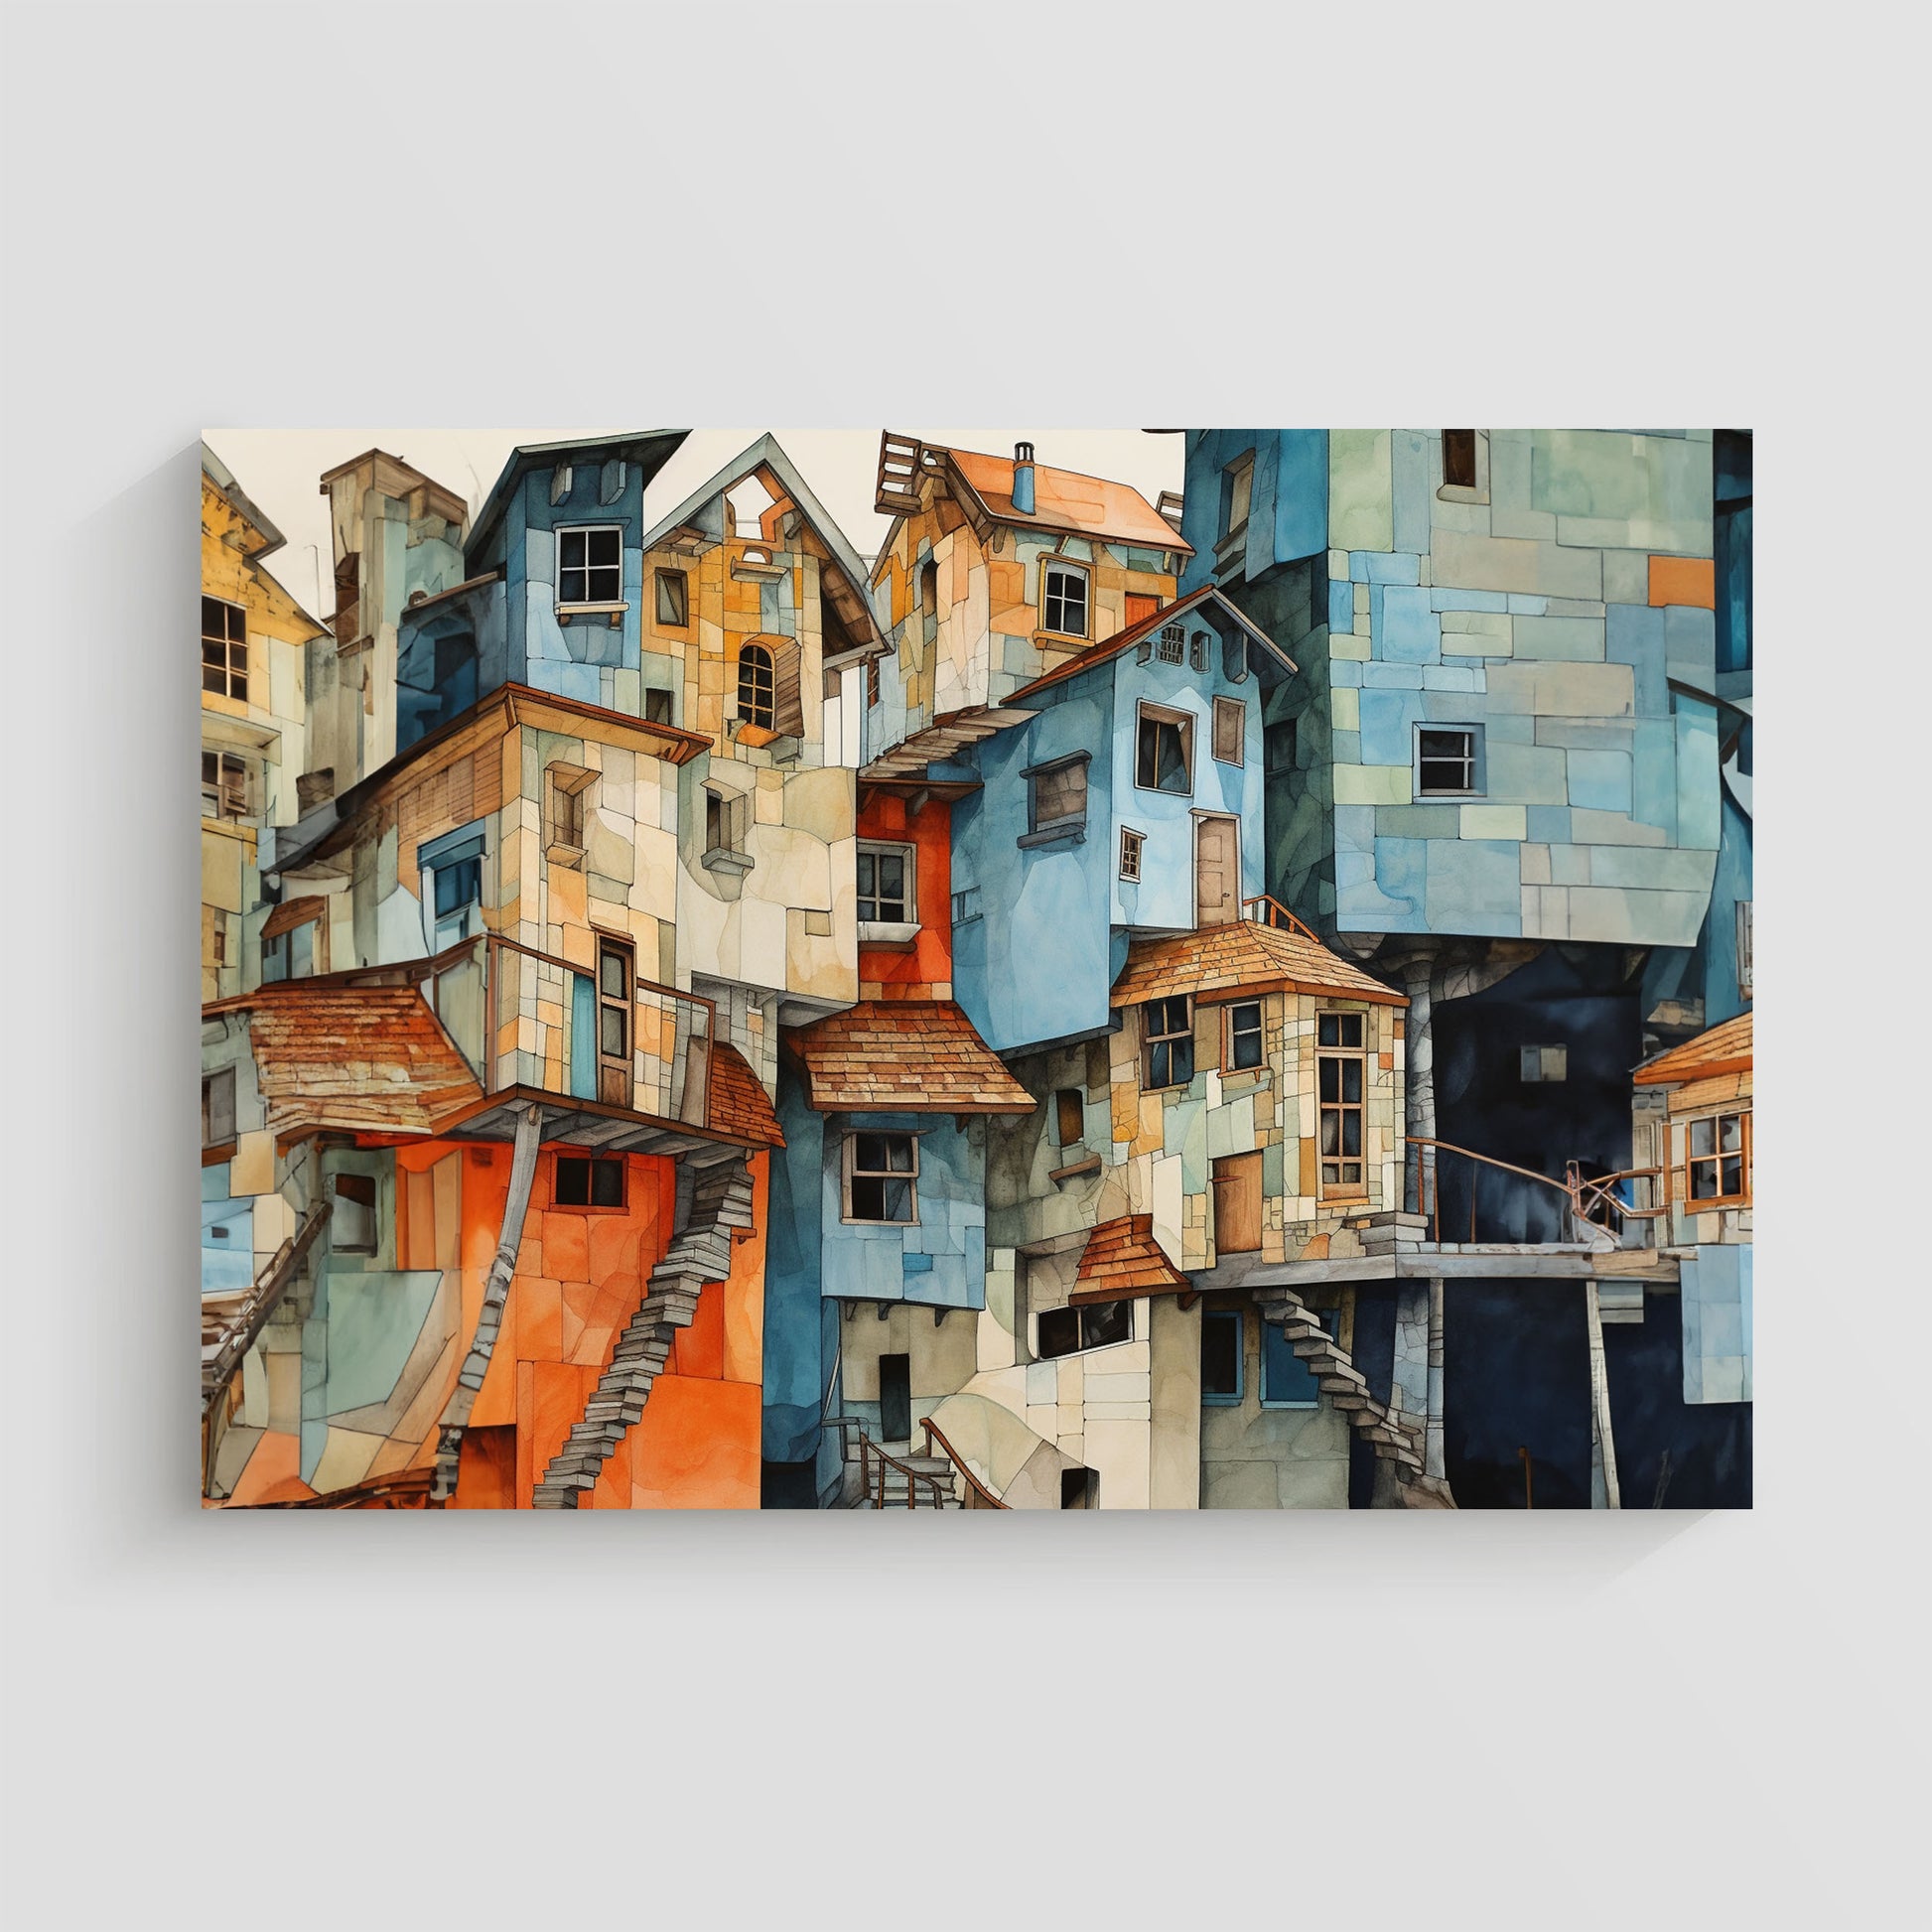 Imagen de una serie de edificios pintorescos con fachadas coloridas y arquitectura única, mostrando detalles intrincados de escaleras y tejados en una disposición artística y compleja.